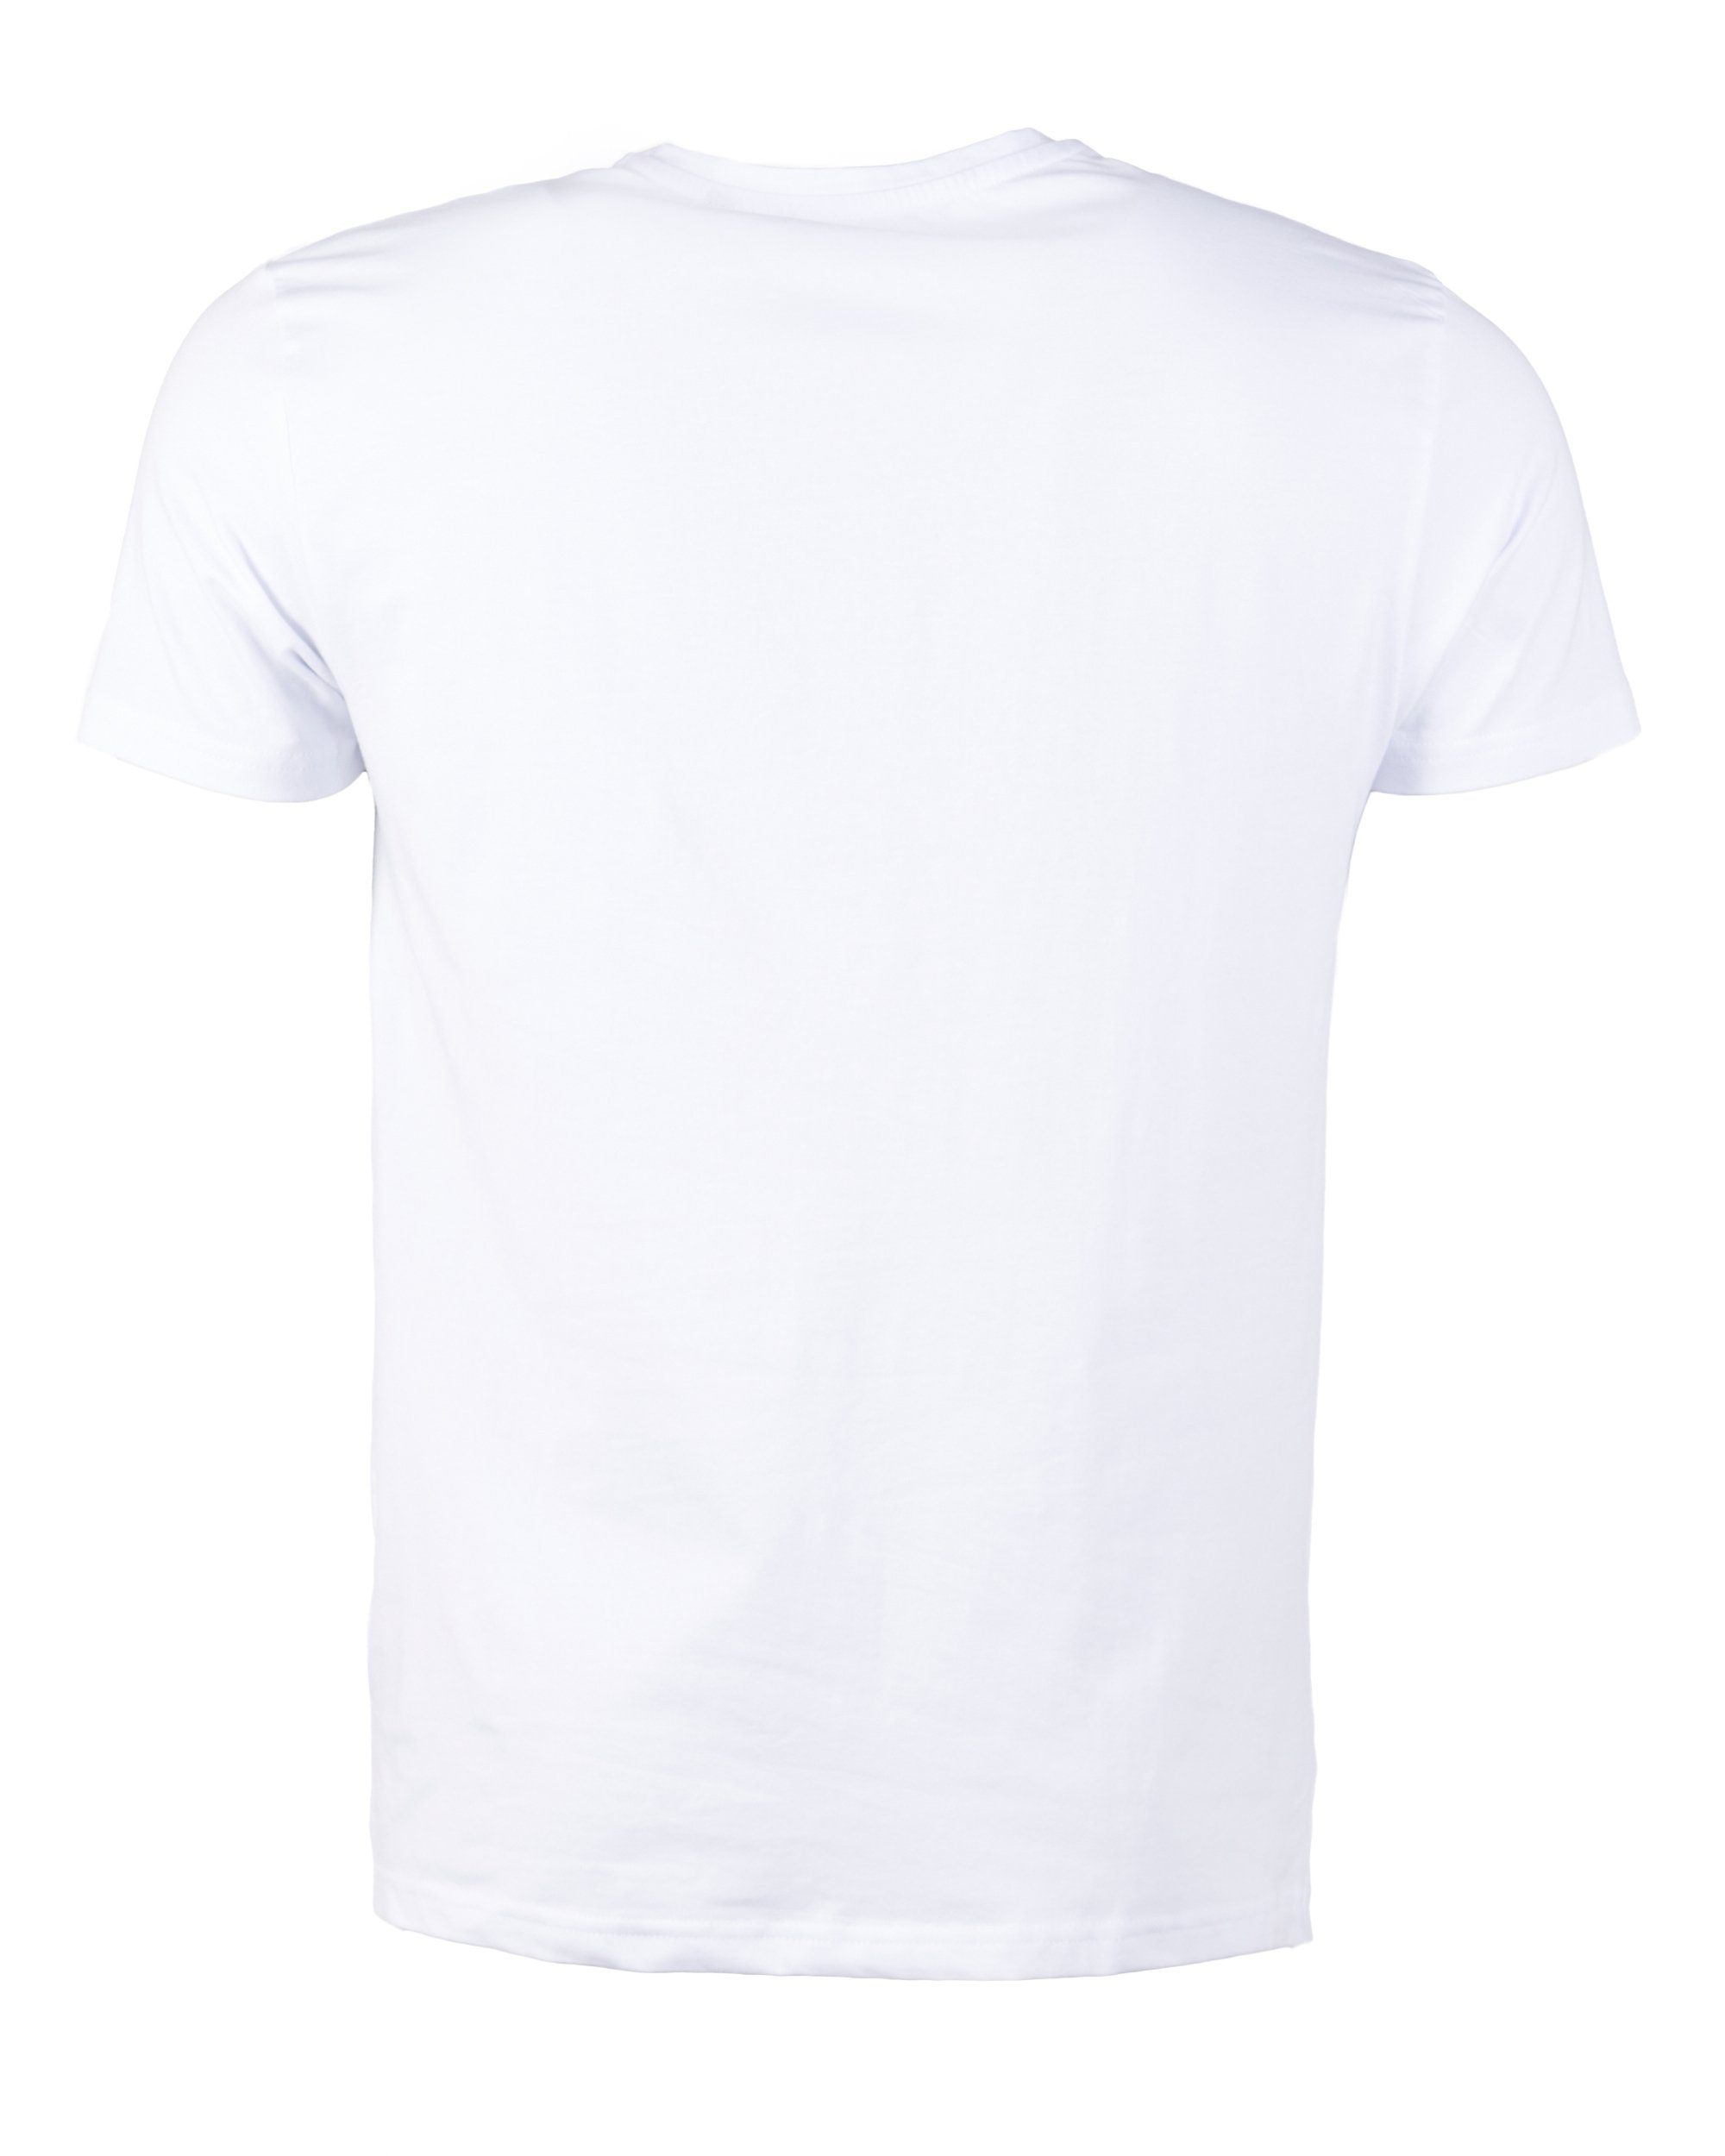 TOP GUN T-Shirt TG20193017 white Bling4U